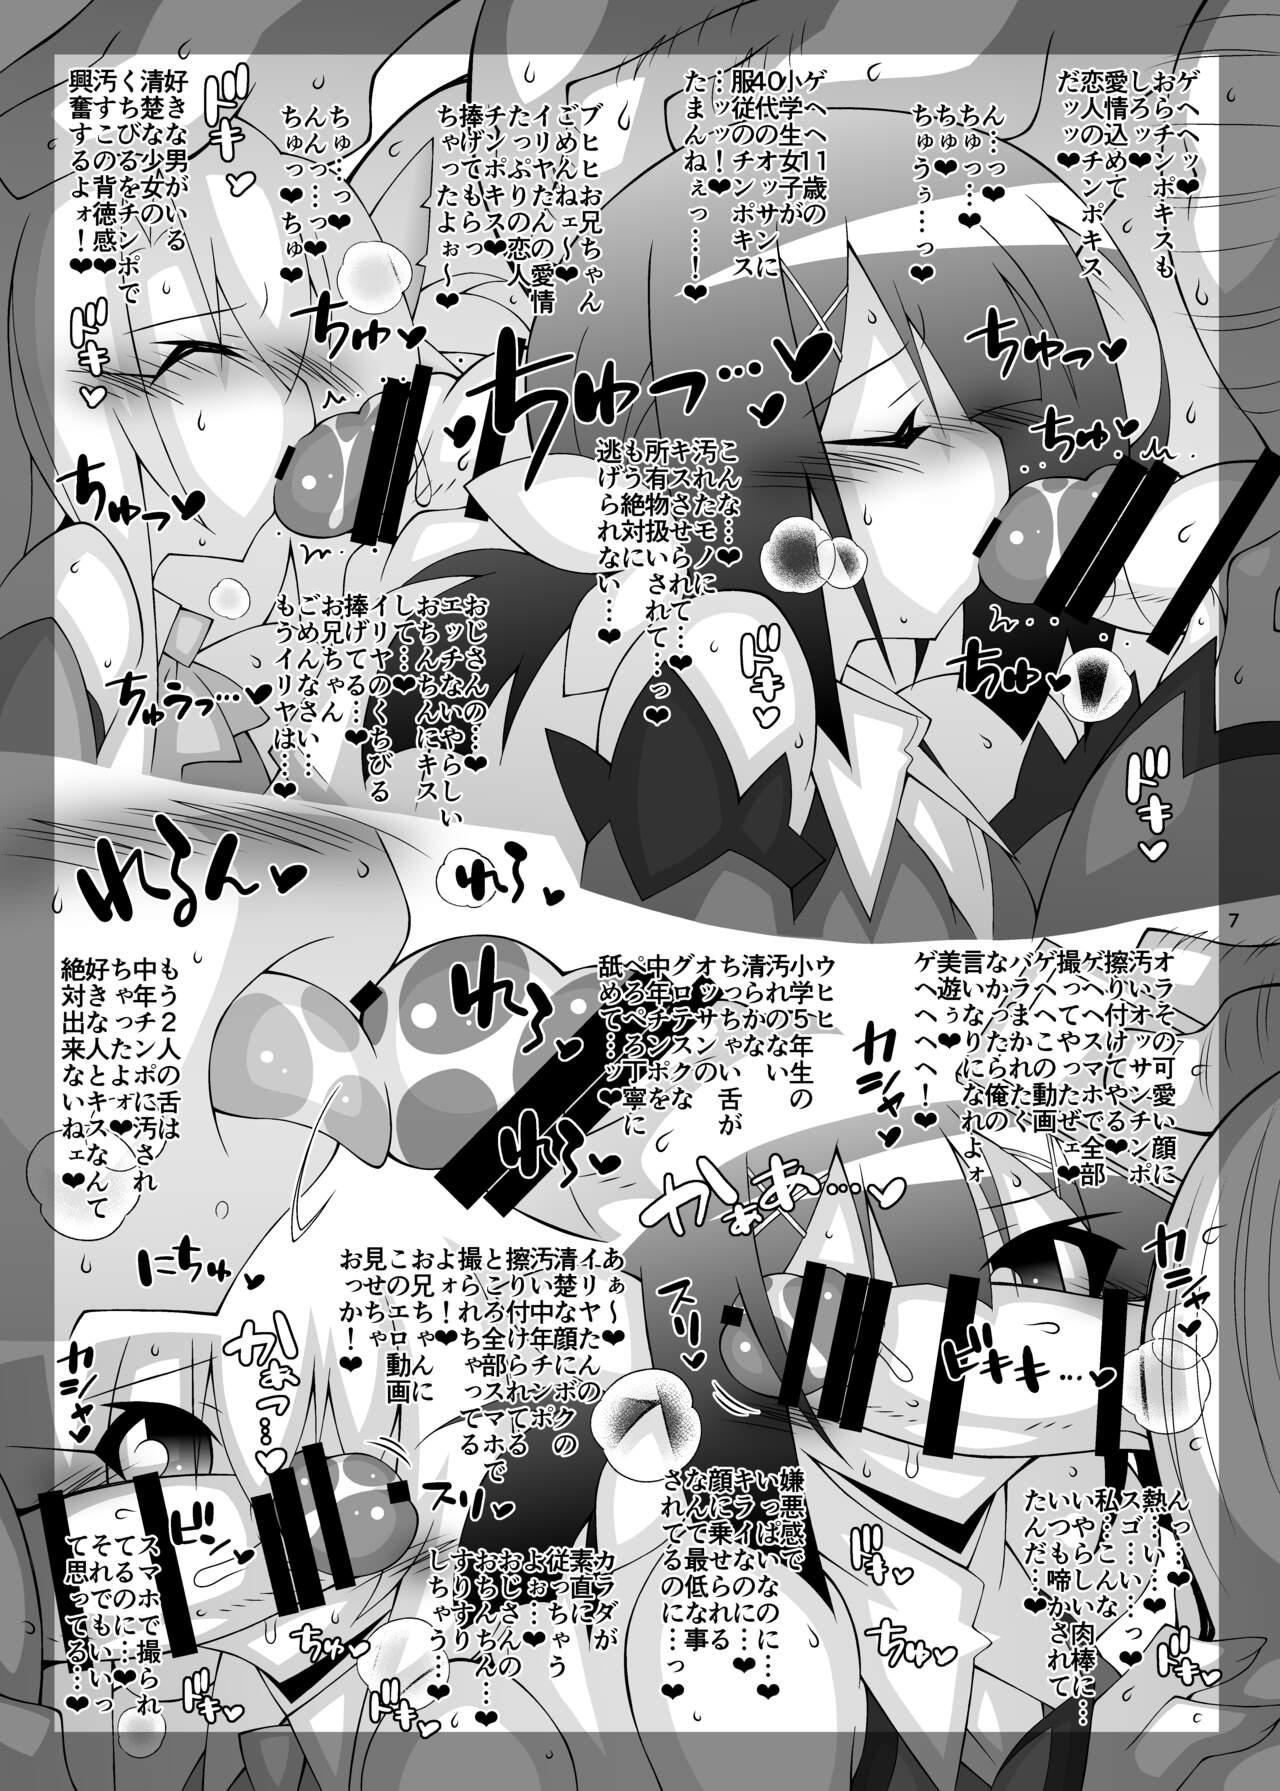 Housewife Ochiru Mahou Shoujo Tsuika Kiroku 3 - Fate kaleid liner prisma illya Cumfacial - Page 6